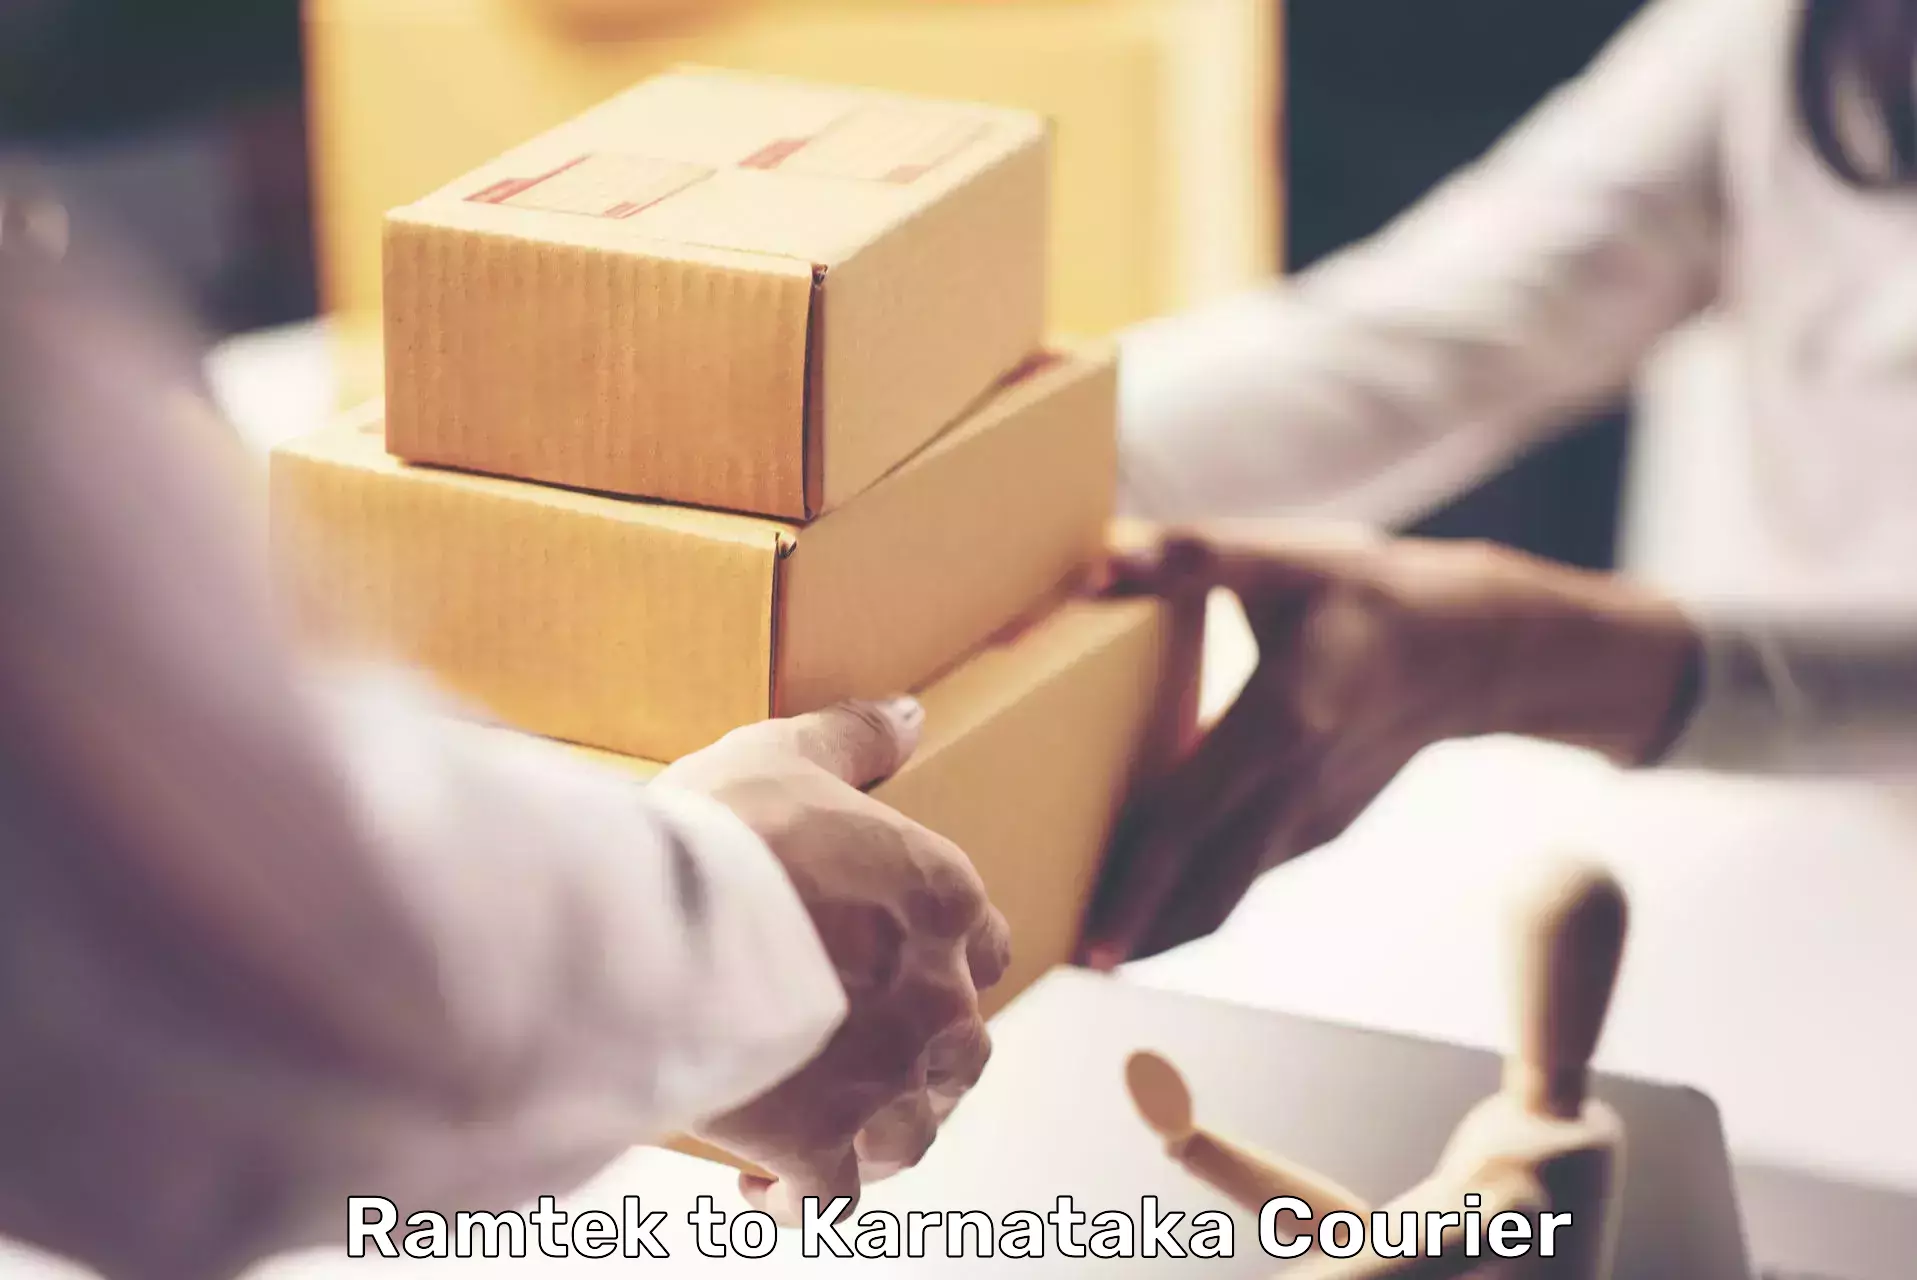 Automated parcel services Ramtek to Belur